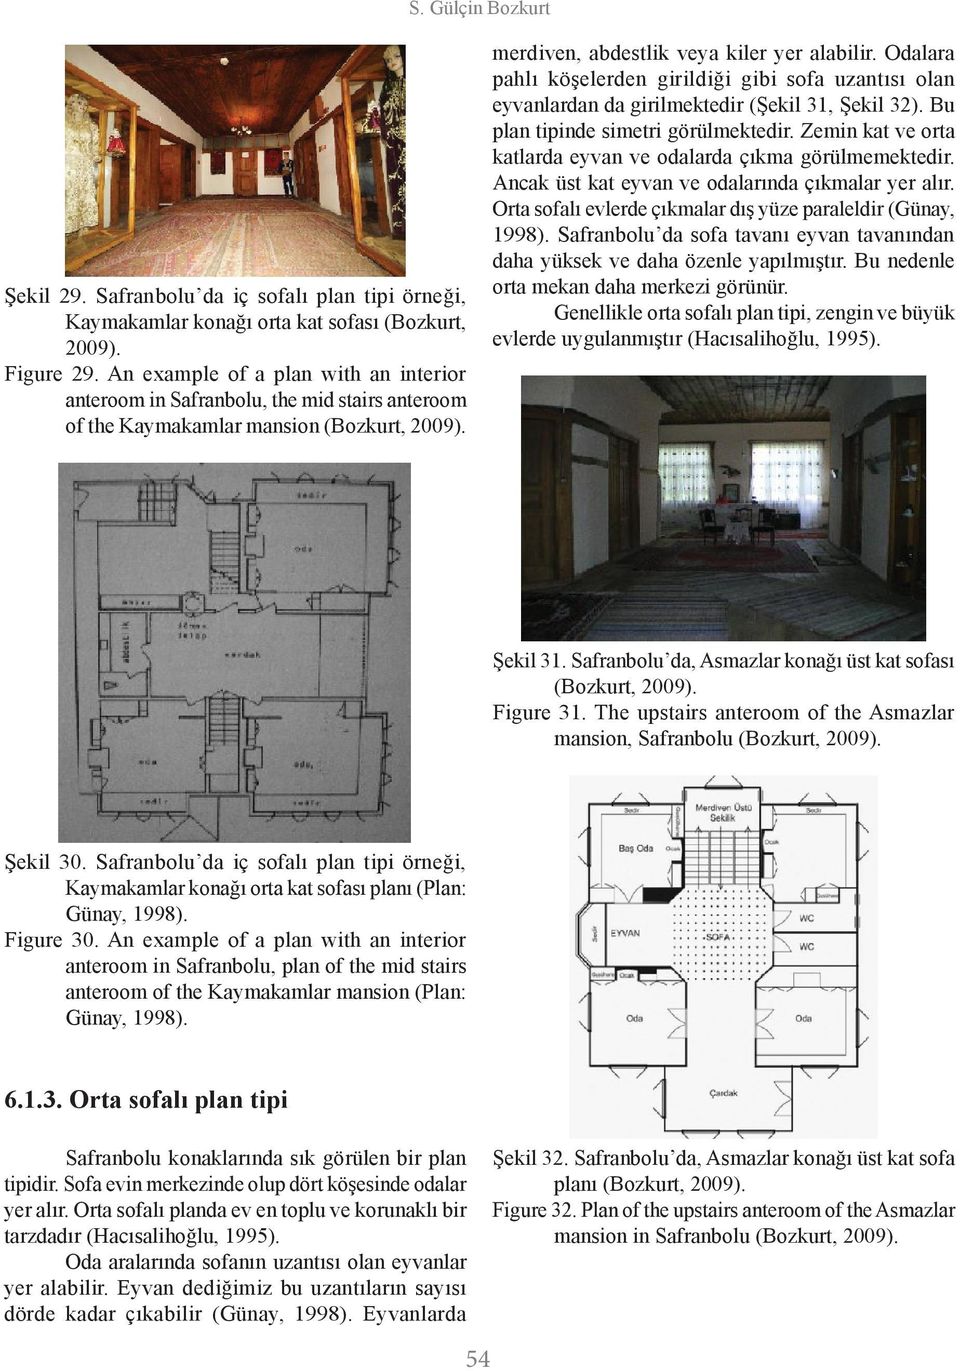 Odalara pahlı köşelerden girildiği gibi sofa uzantısı olan eyvanlardan da girilmektedir (Şekil 31, Şekil 32). Bu plan tipinde simetri görülmektedir.